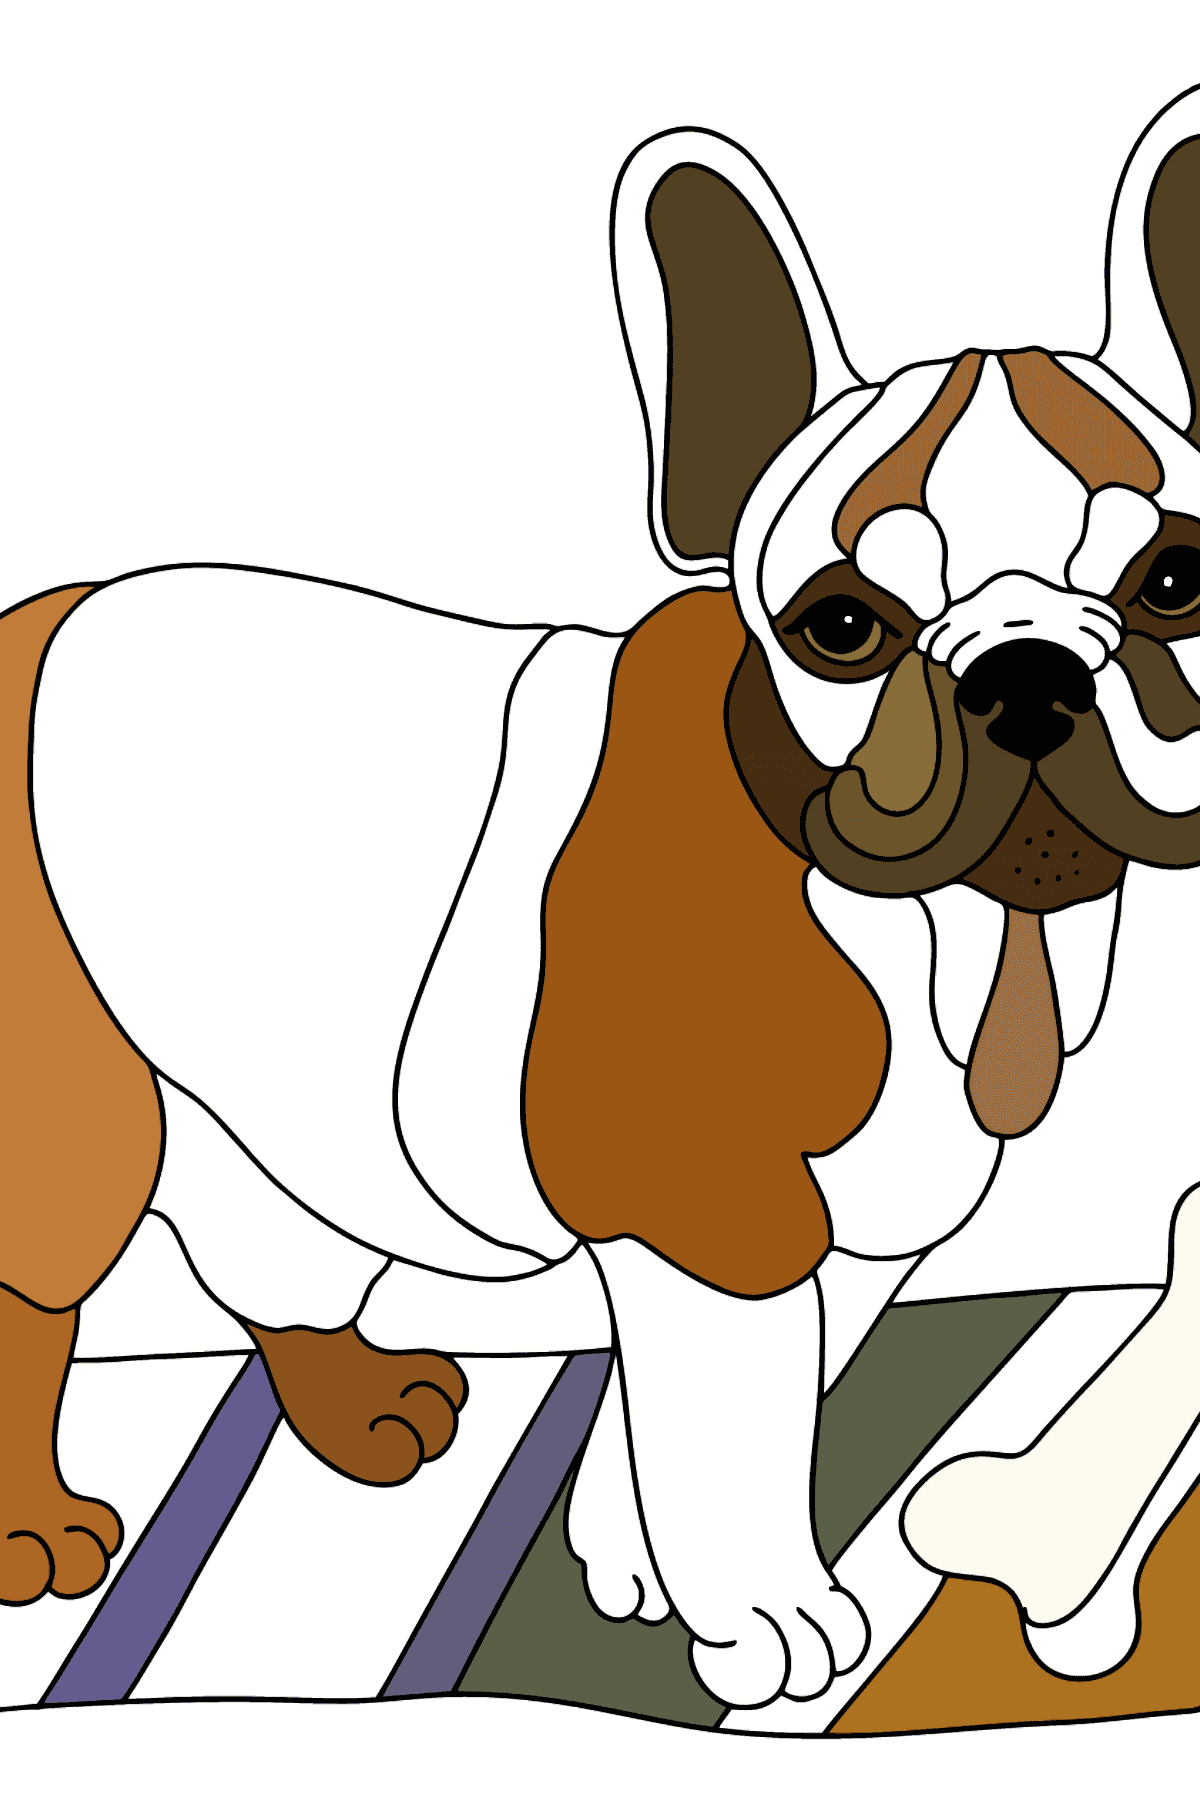 Boyama sayfası fransız bulldog (zor) - Boyamalar çocuklar için